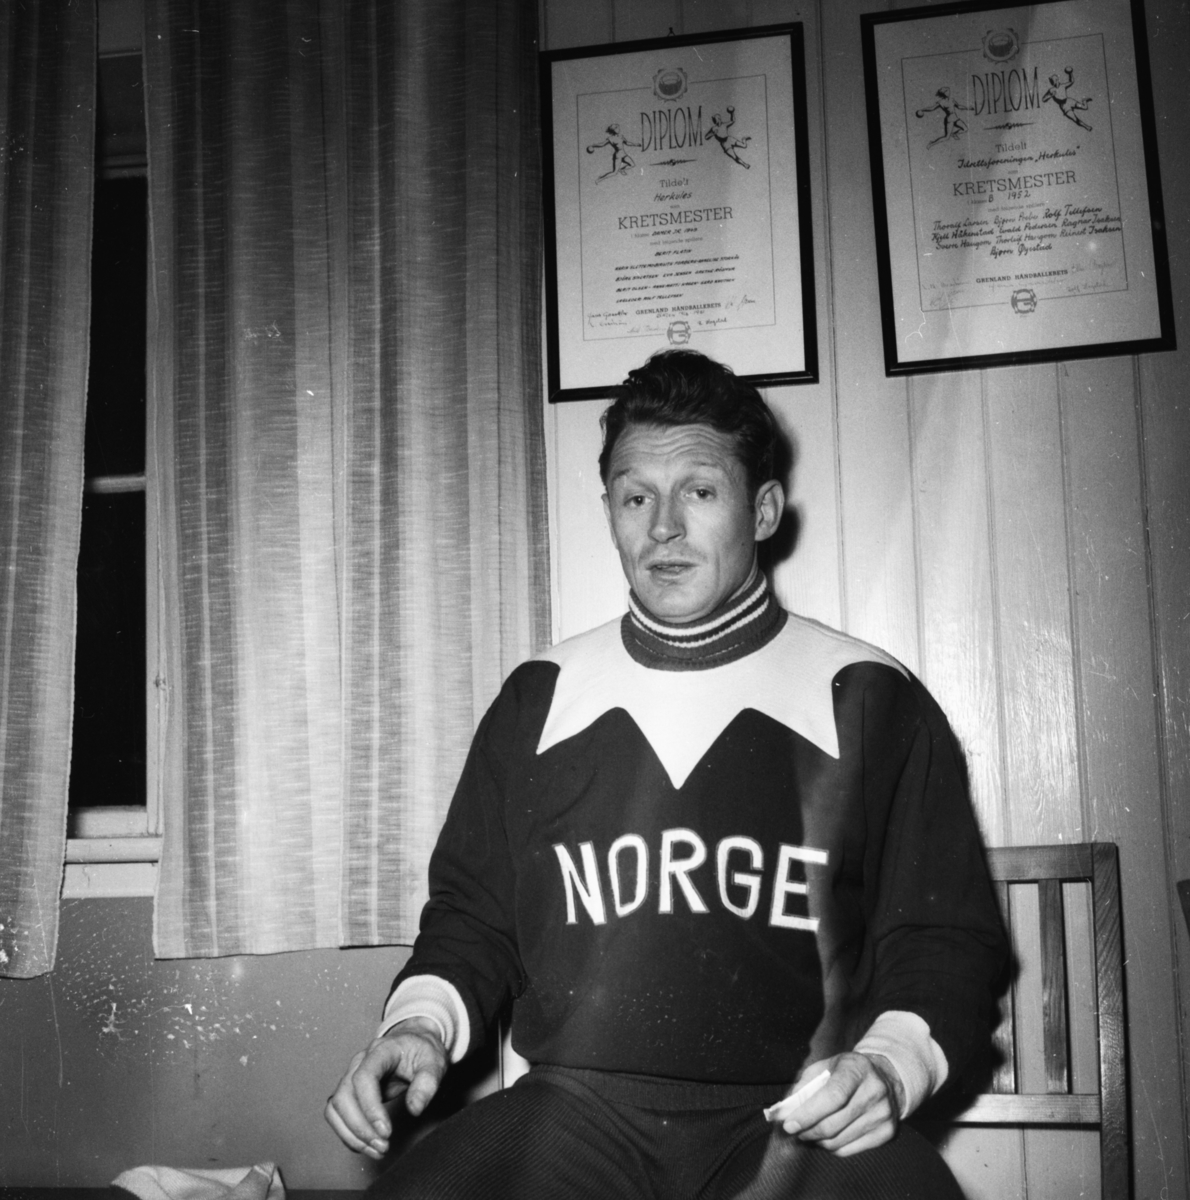 Vardens arkiv. "Skøyteløp på Herkules"  25.02.1954